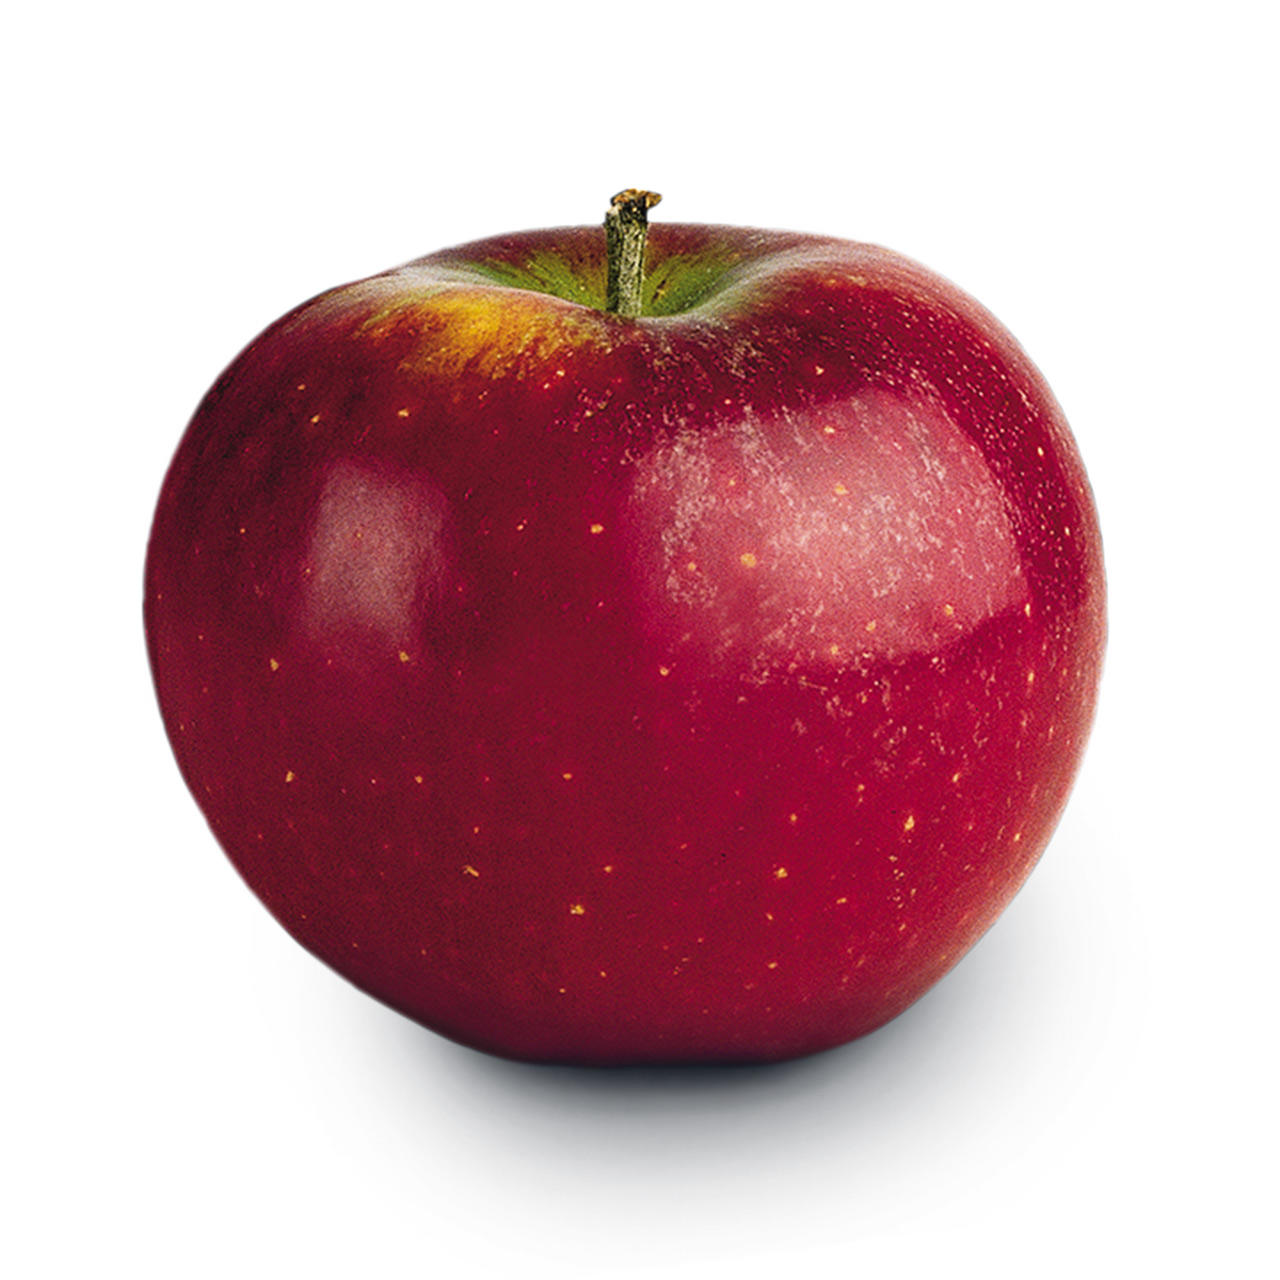 Ingrid marie er et dansk æble, der har sin oprindelse på Fyn